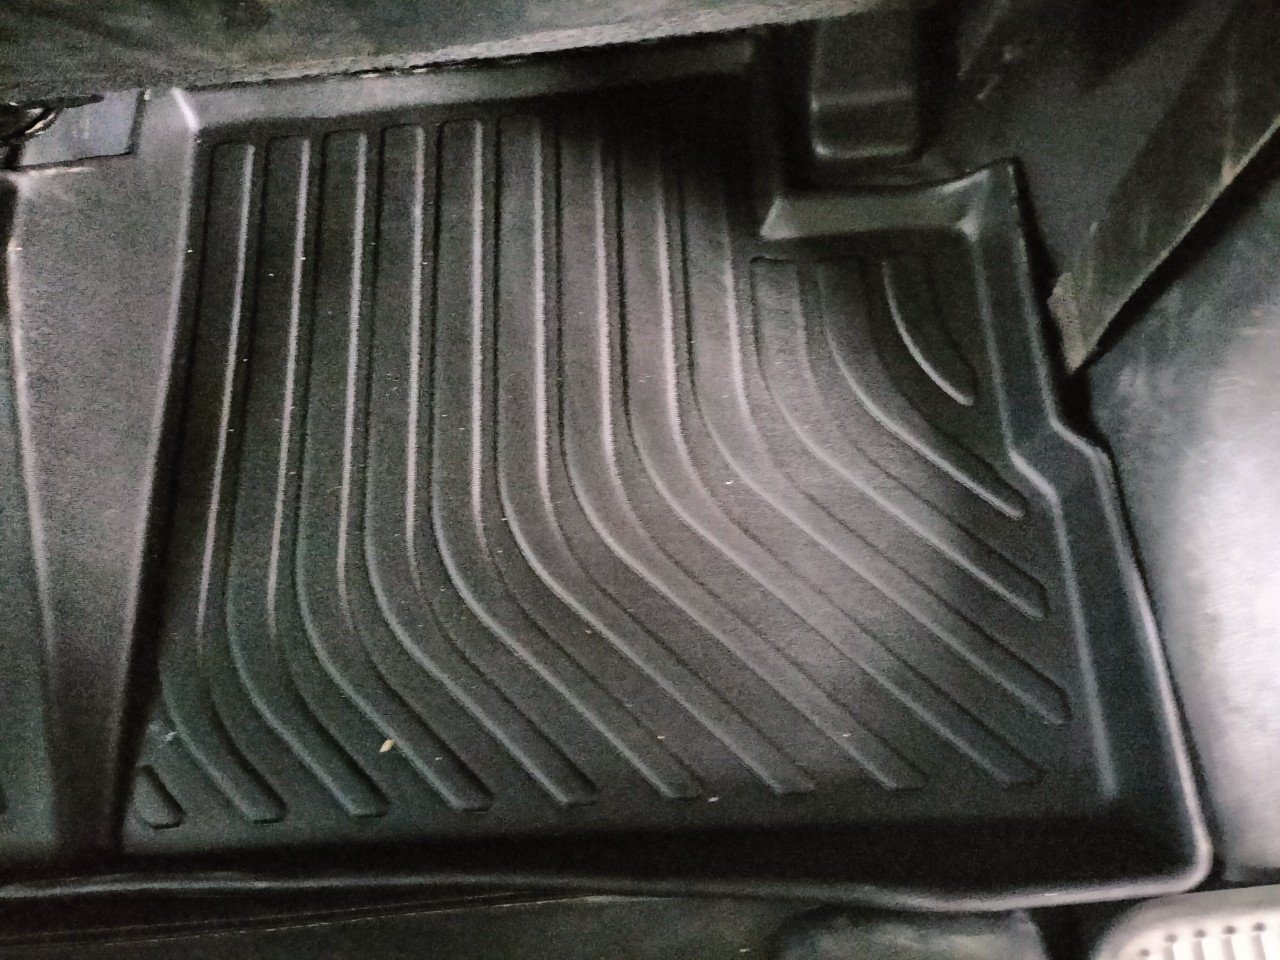 Thảm lót sàn xe ô tô Mitsubishi Xpander New Nhãn hiệu Macsim chất liệu nhựa TPE cao cấp màu đen